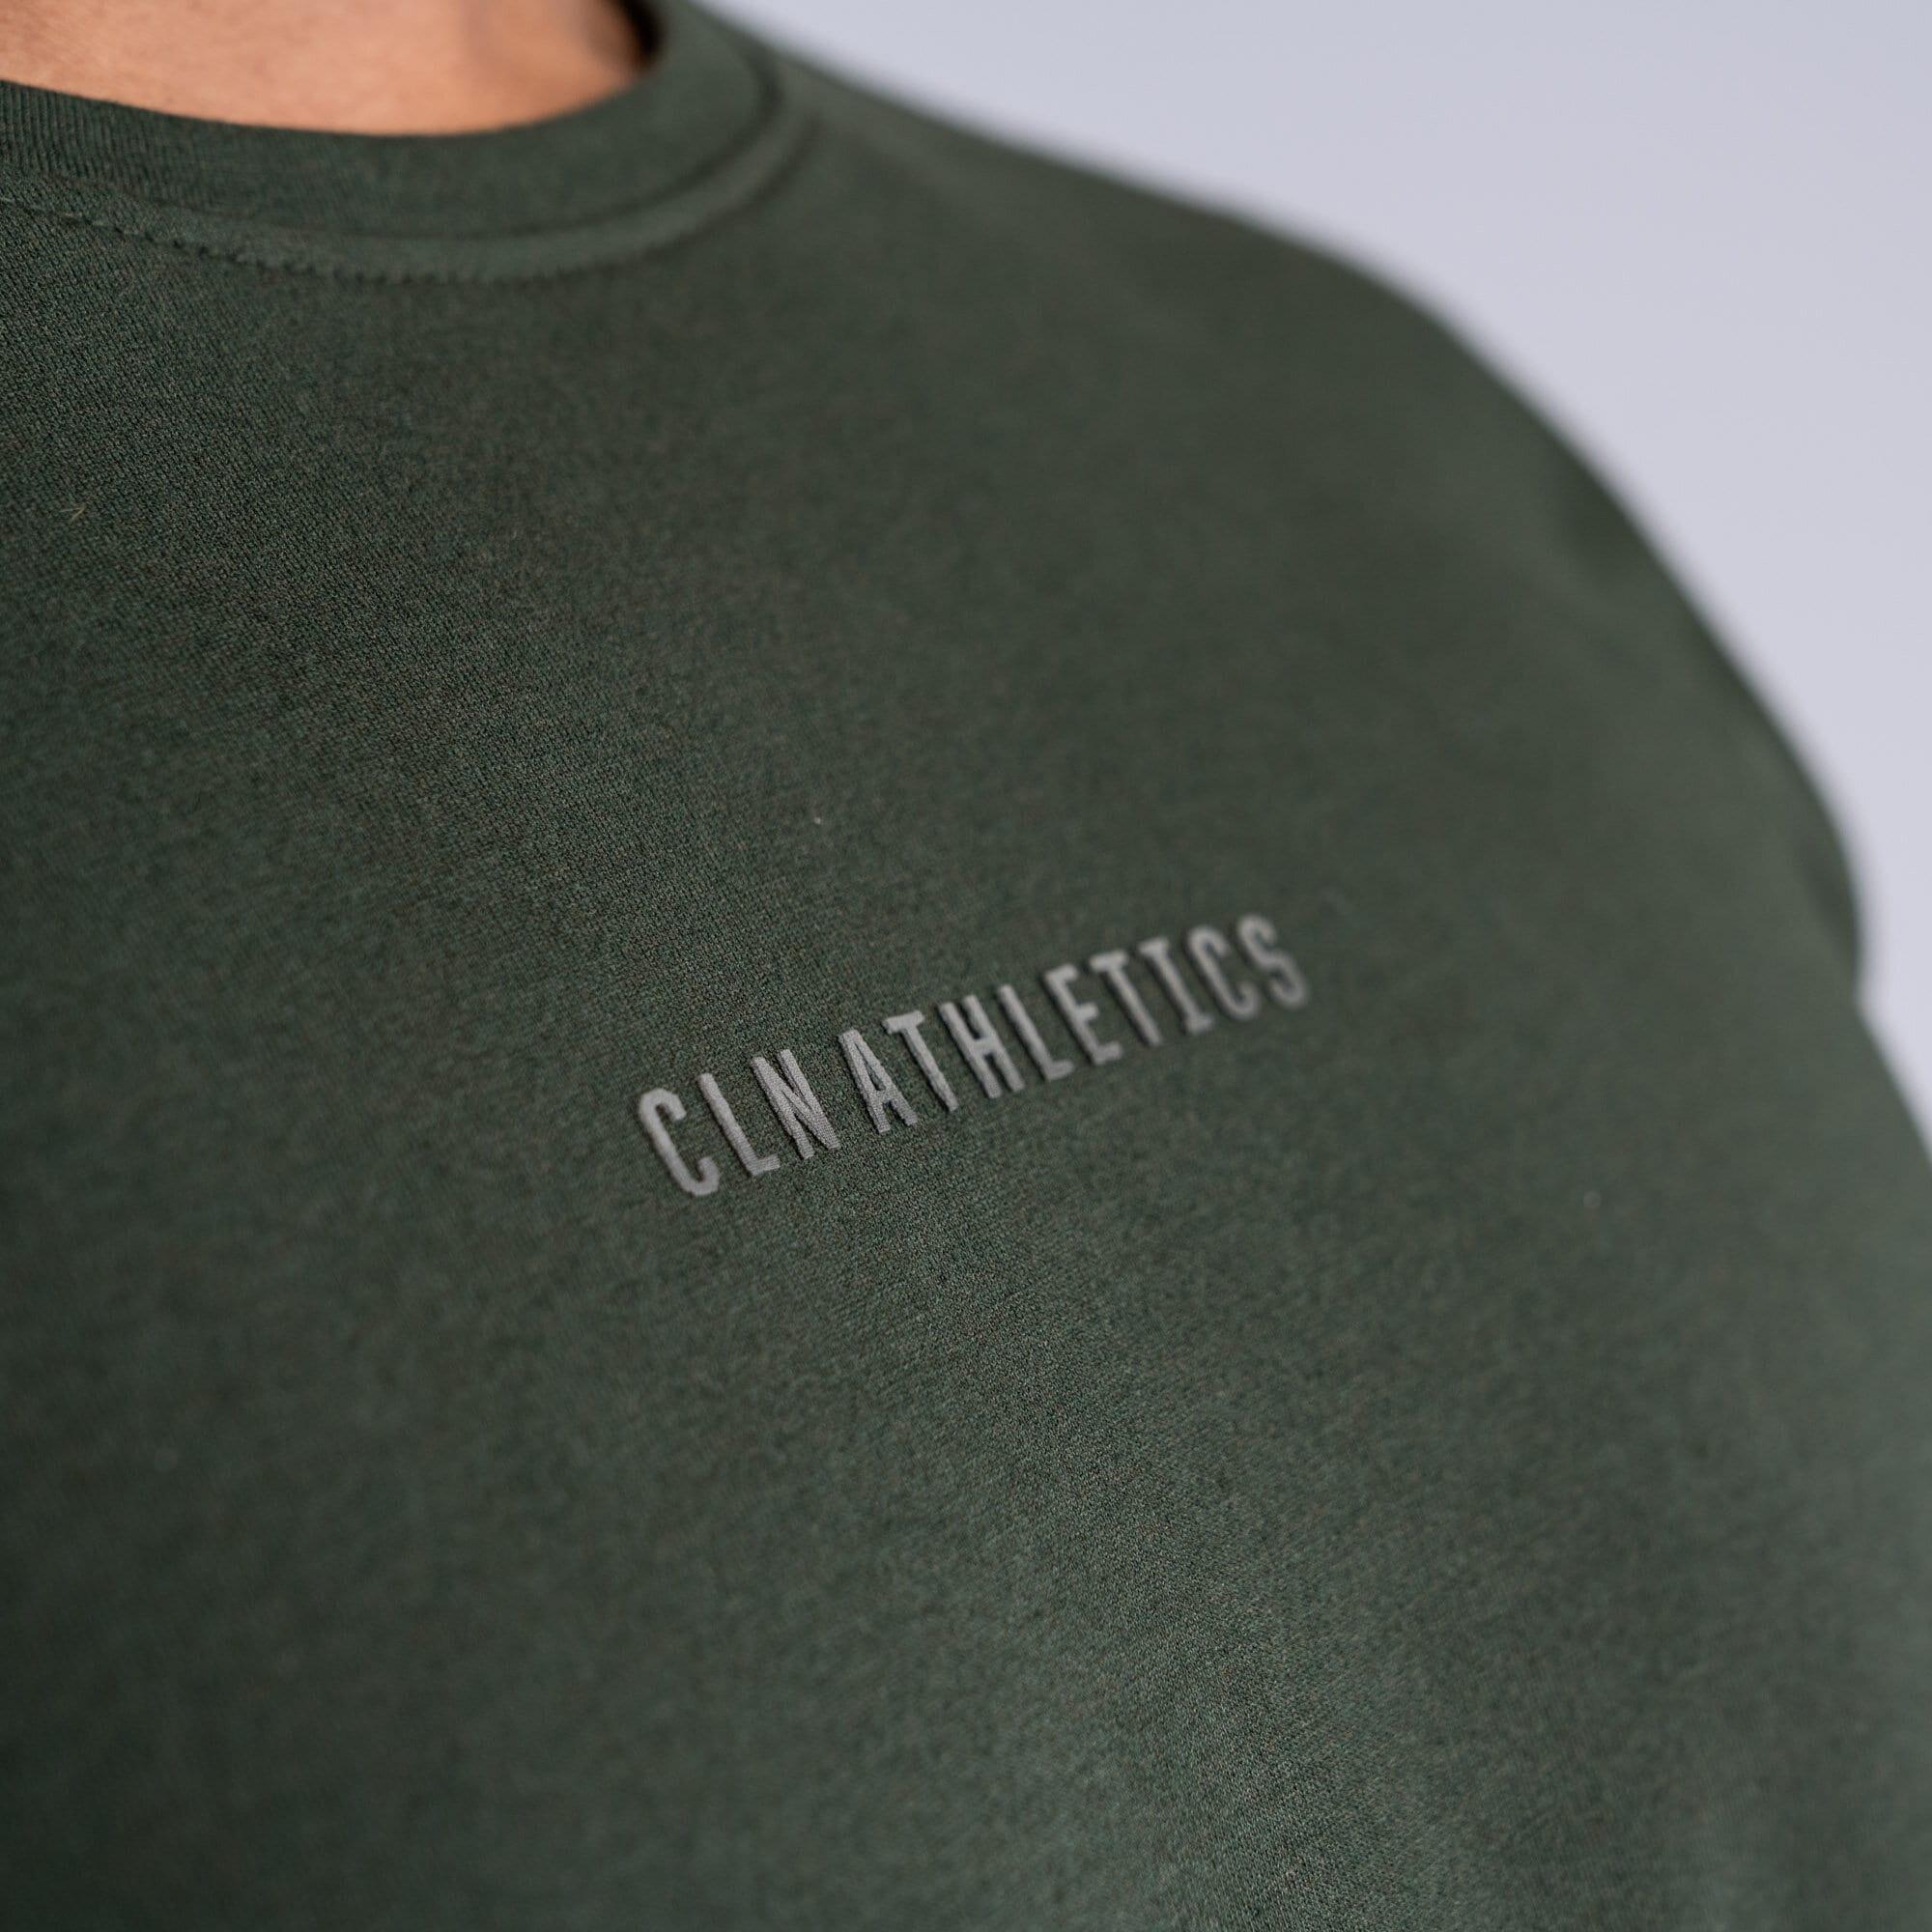 CLN Challenge t-shirt Deep forest green